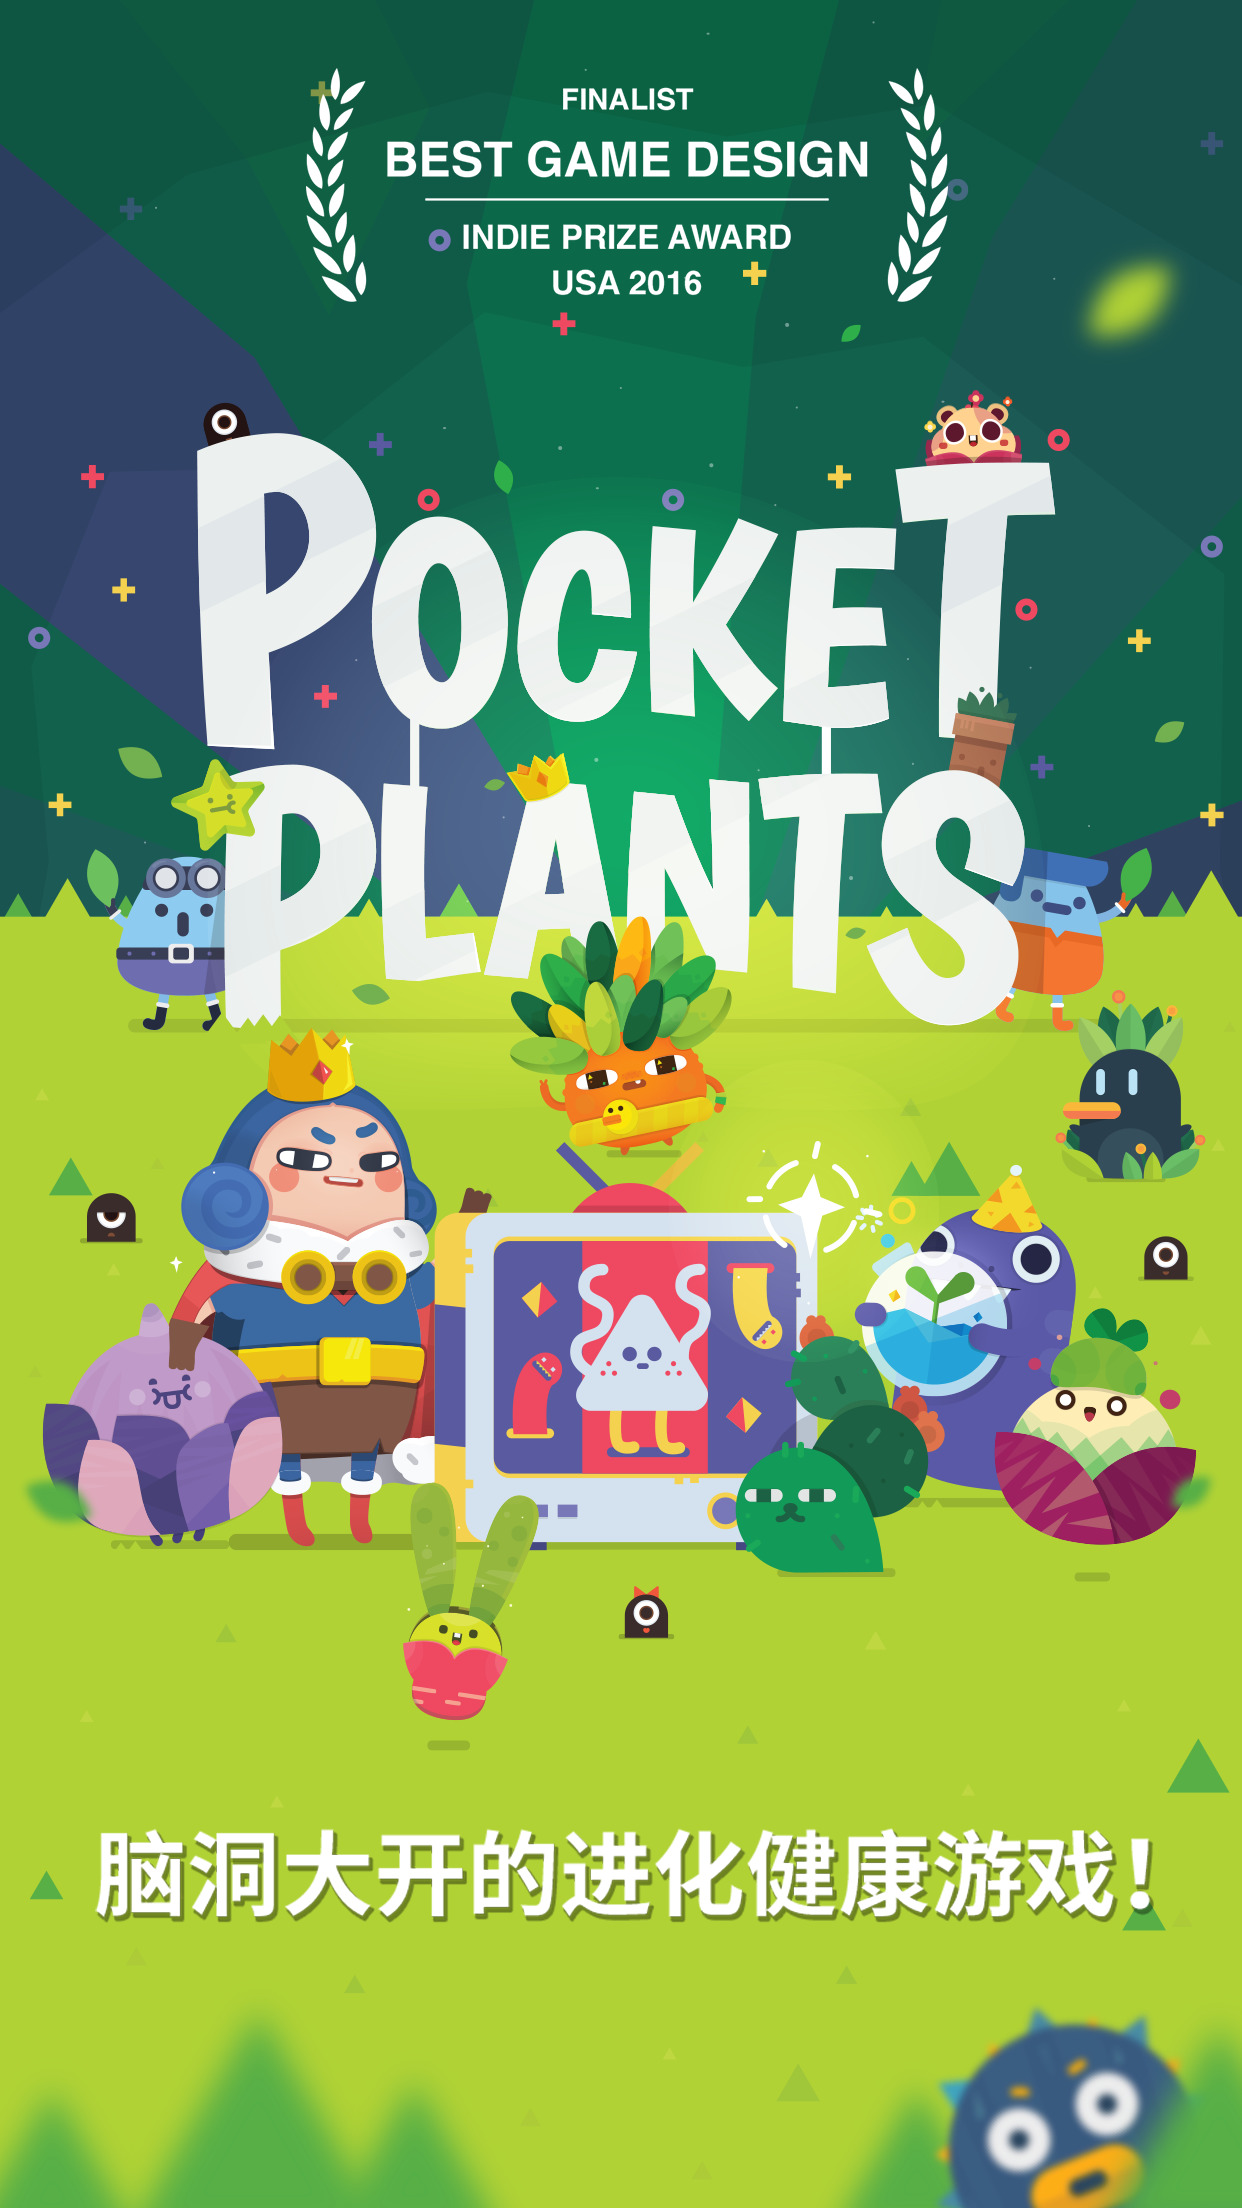 口袋植物：Pocket Plants礼包怎么领取？给一下领取方法或链接？